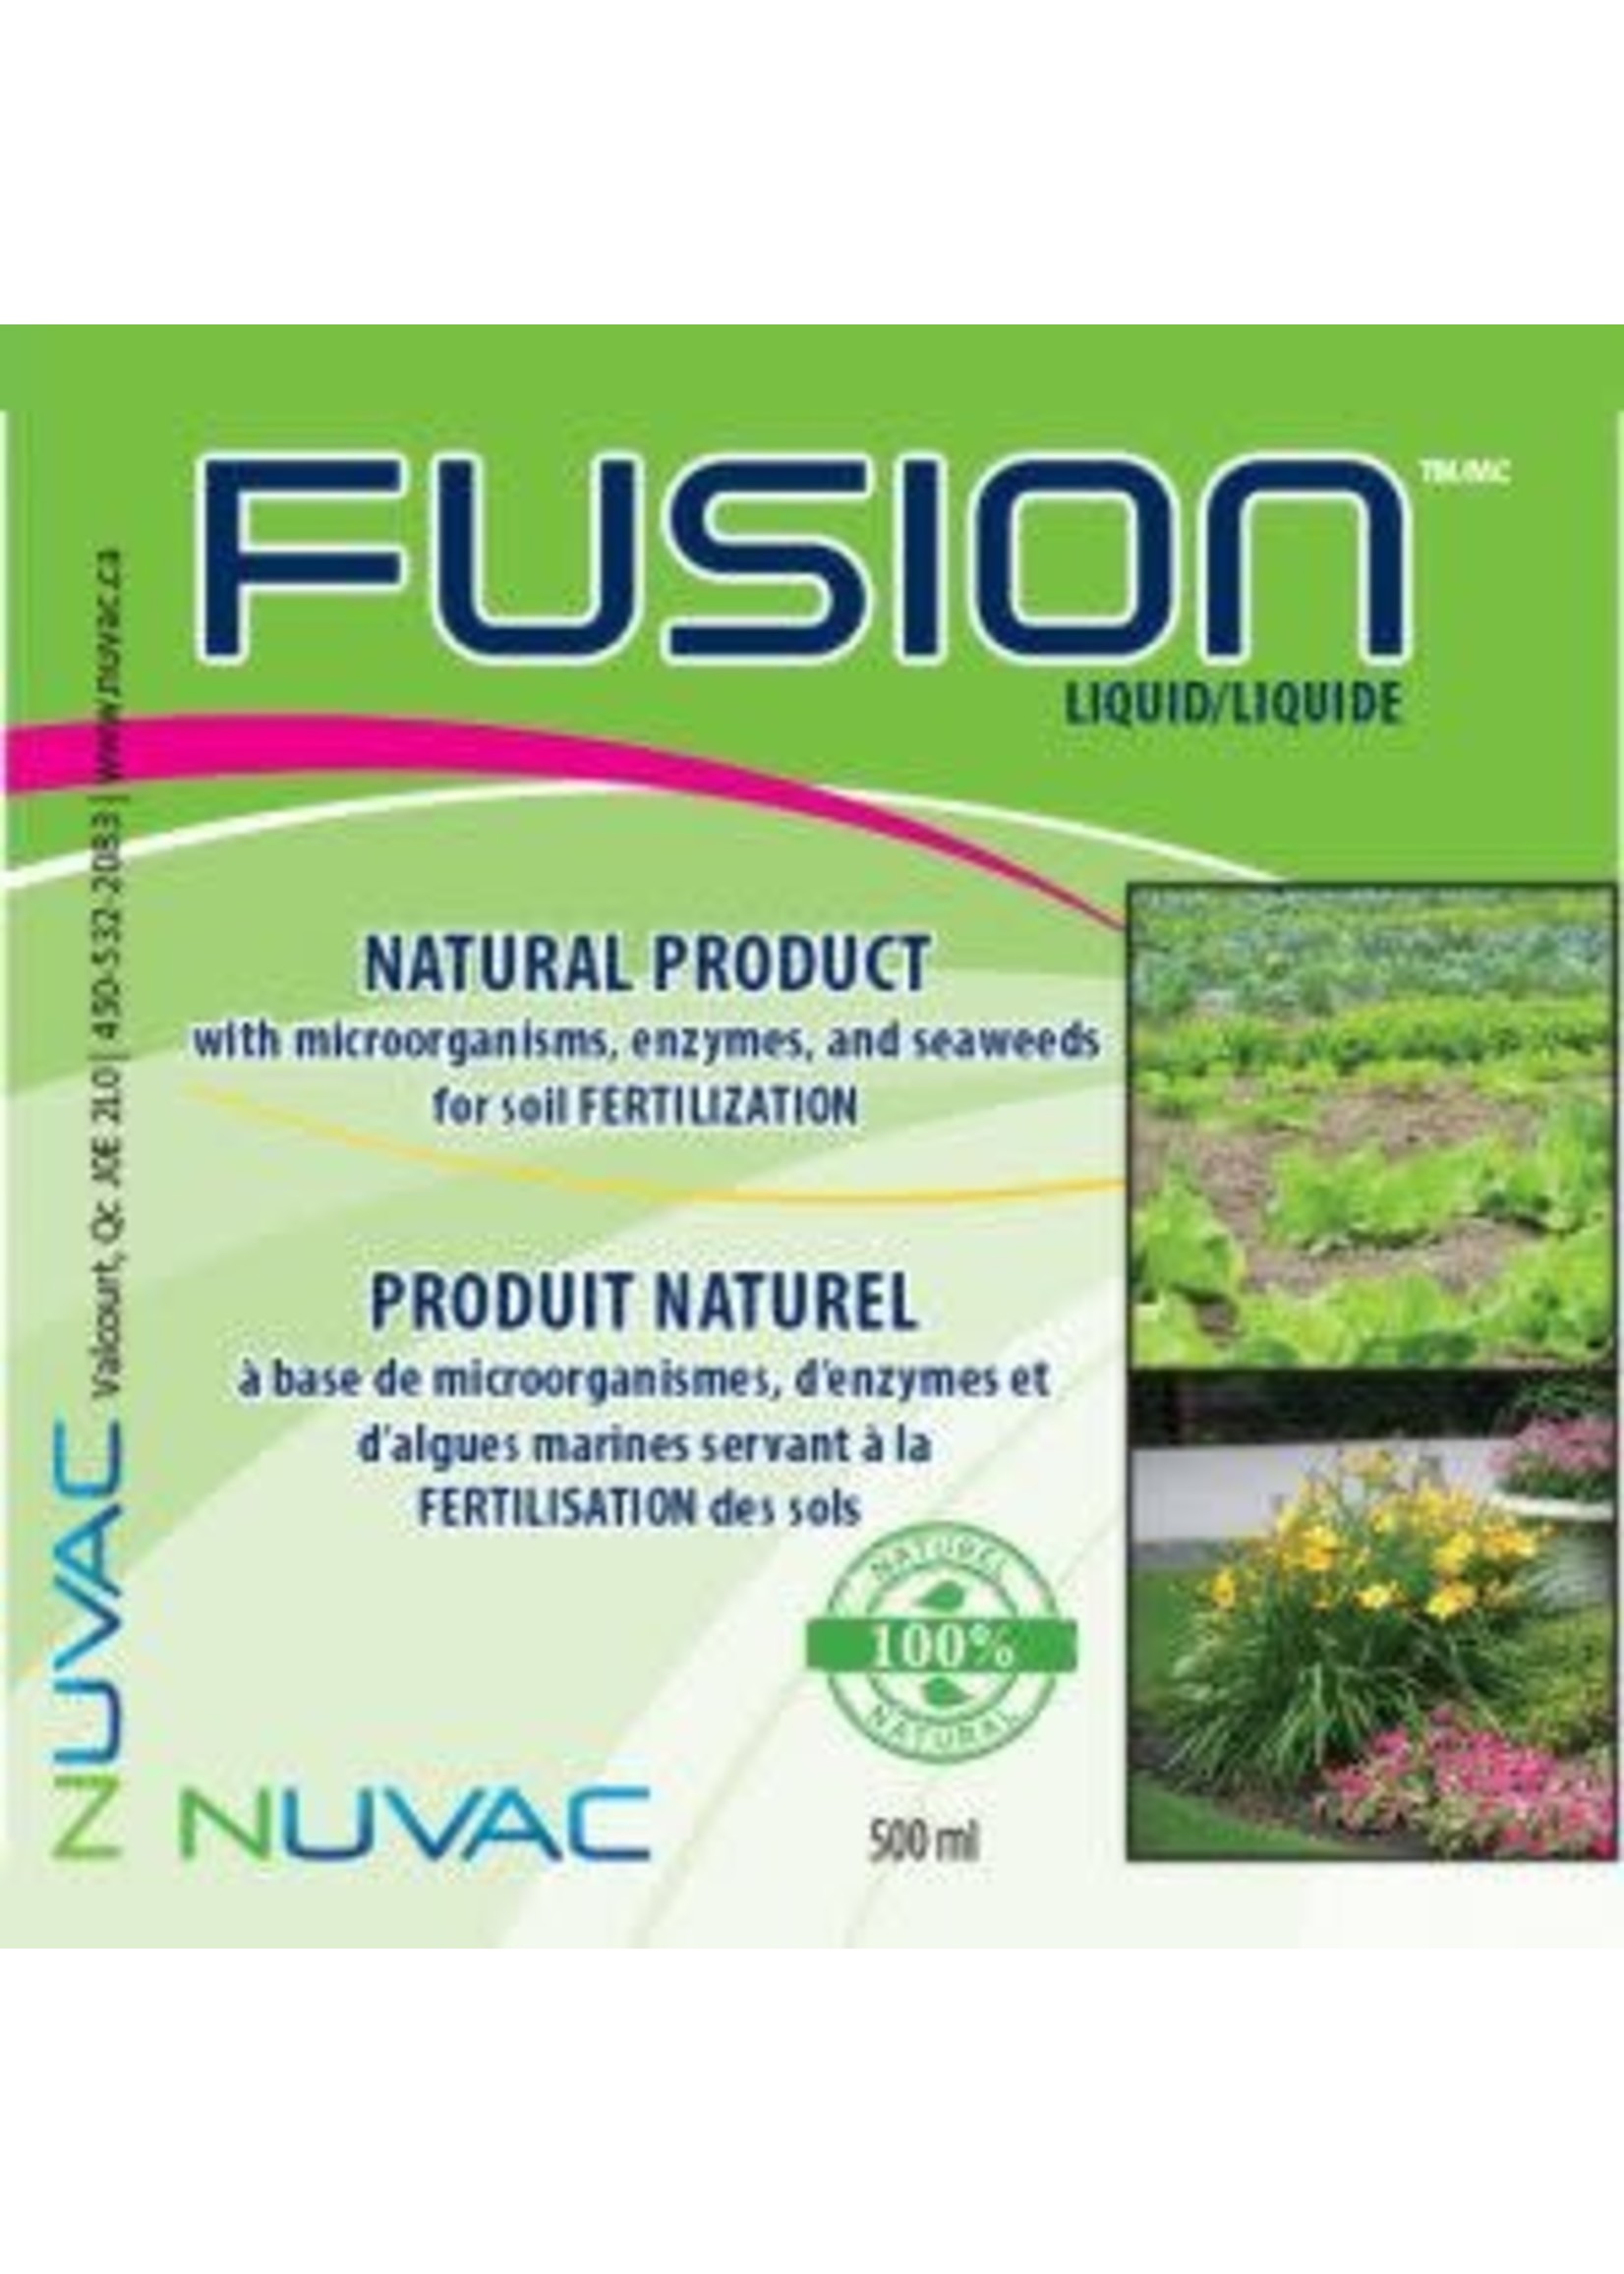 Nuvac Nuvac Fusion Liquide